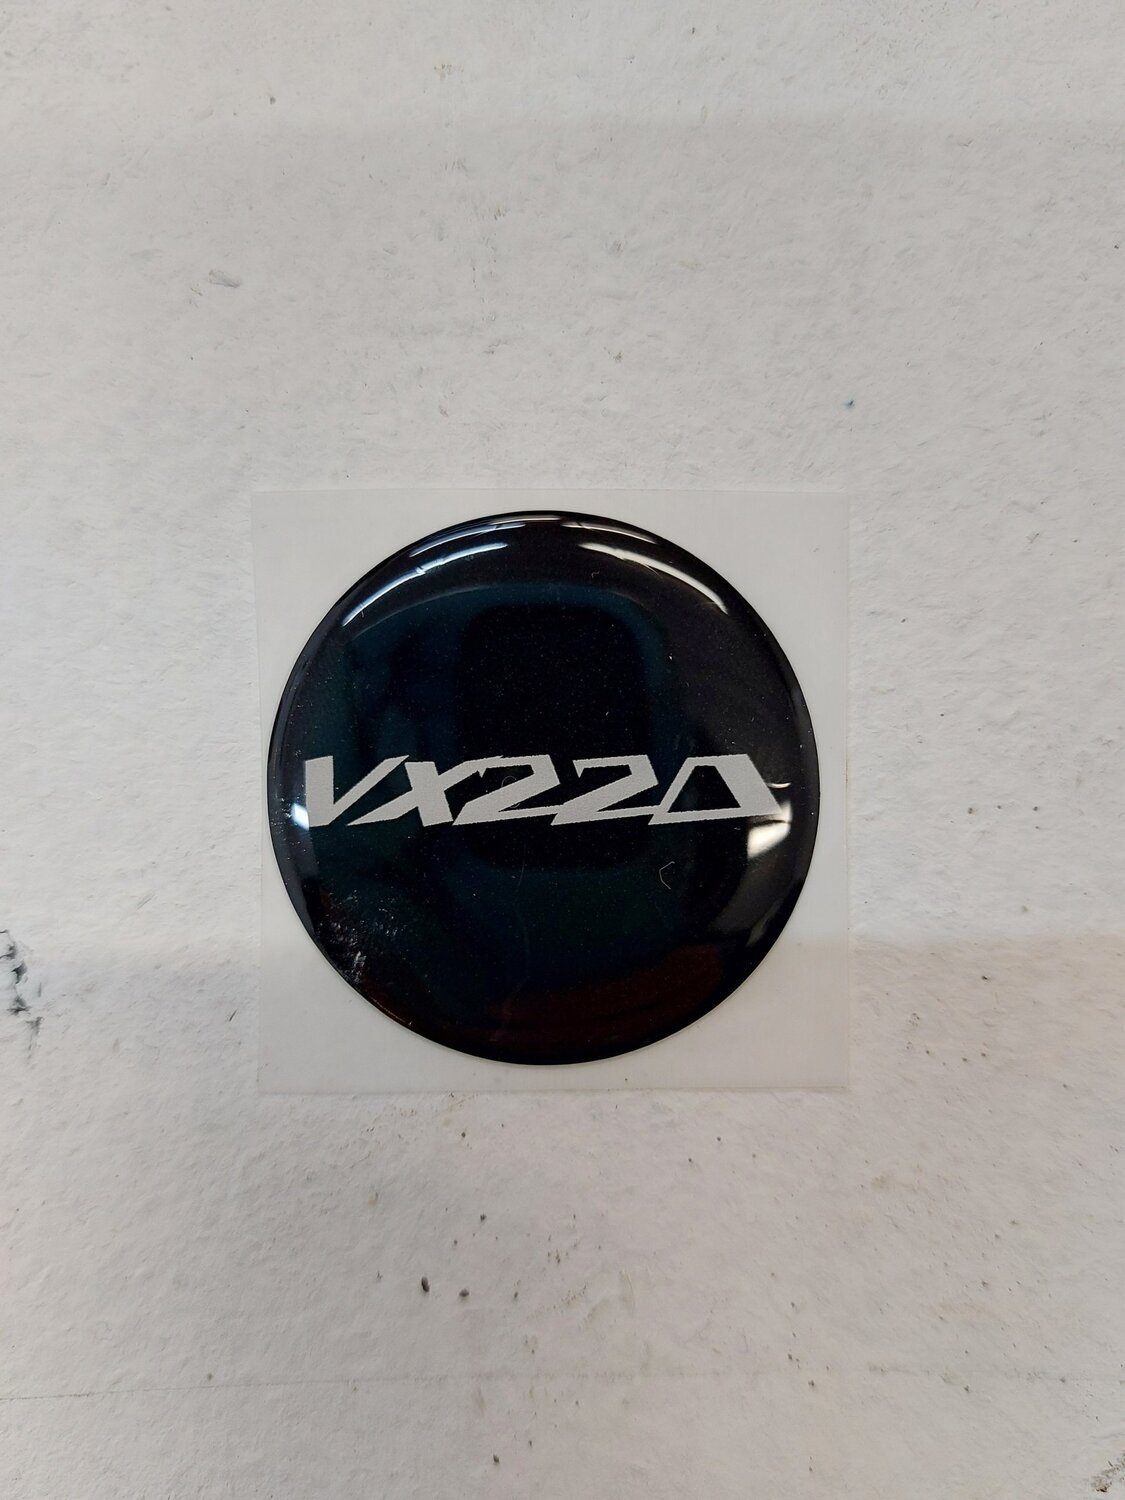 VX220 replacement steering wheel sticker